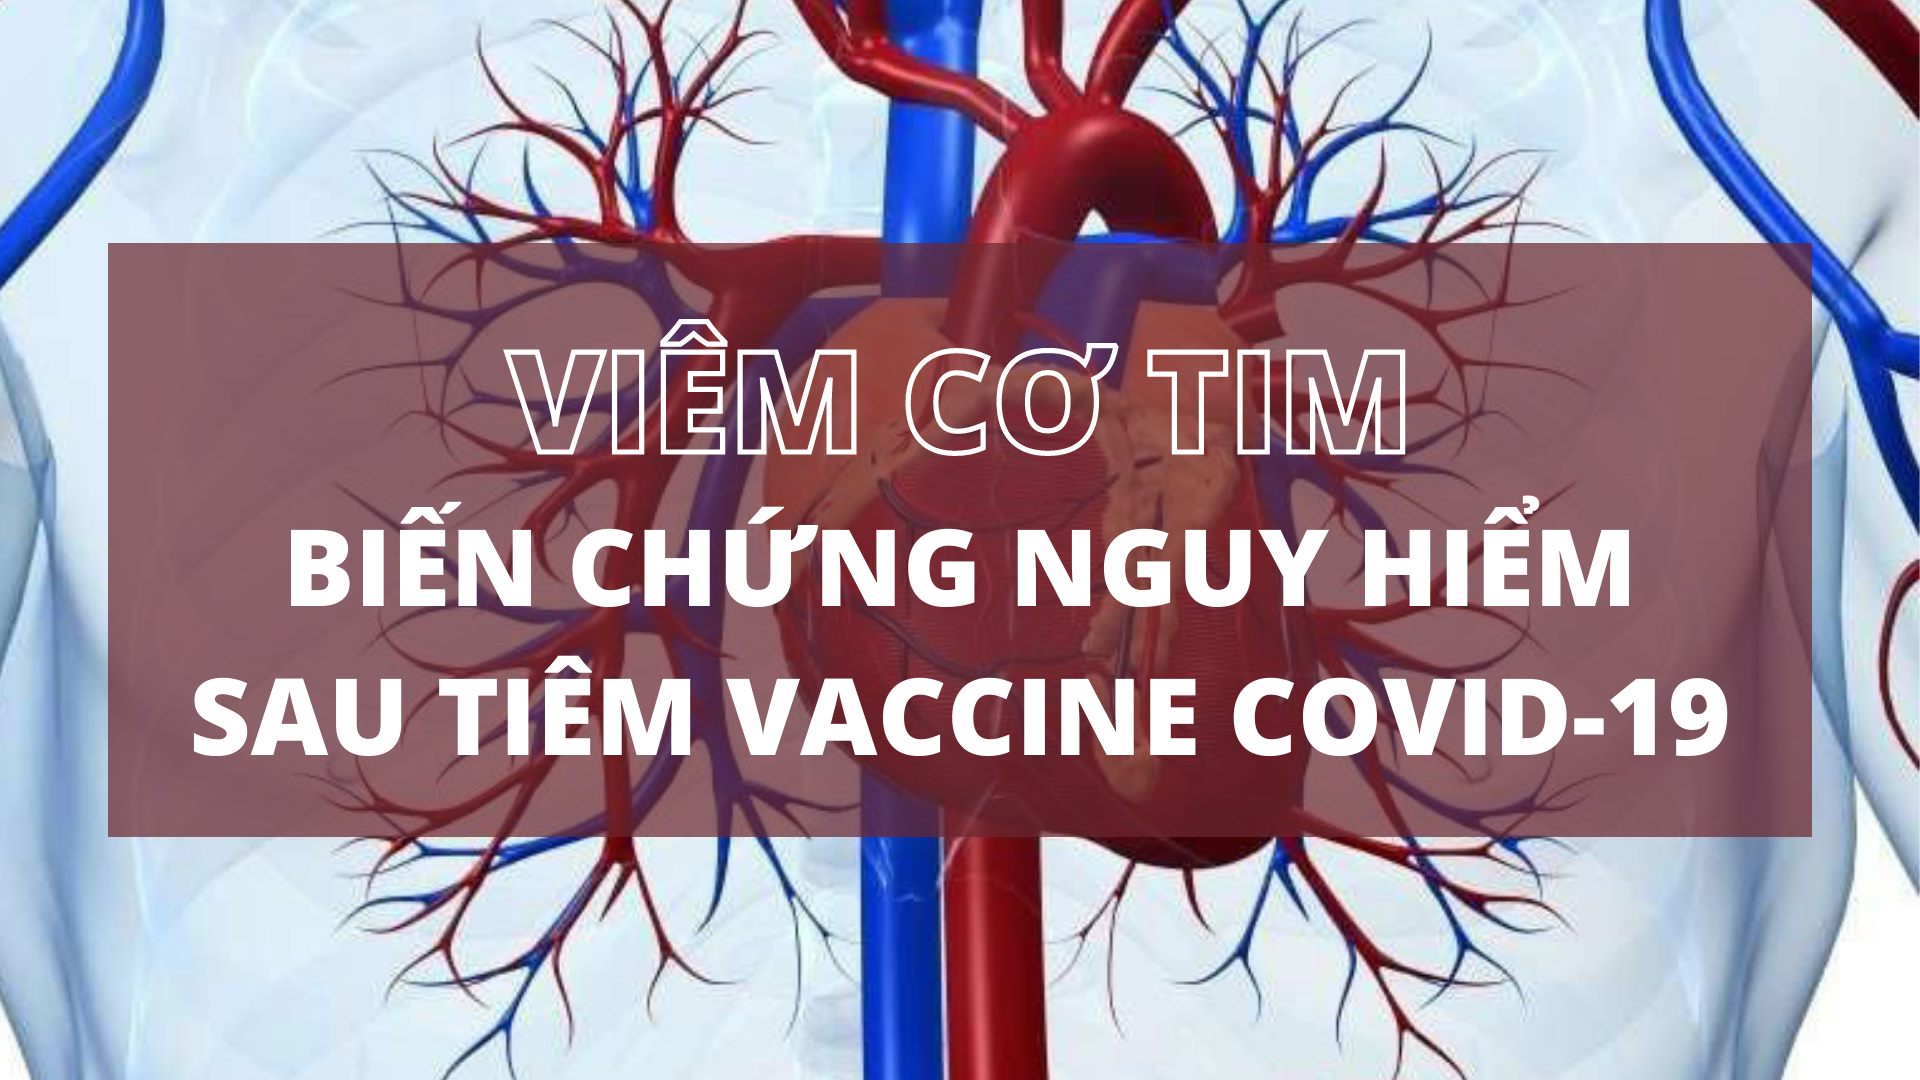 Viêm cơ tim – biến chứng nguy hiểm sau tiêm vaccine COVID-19